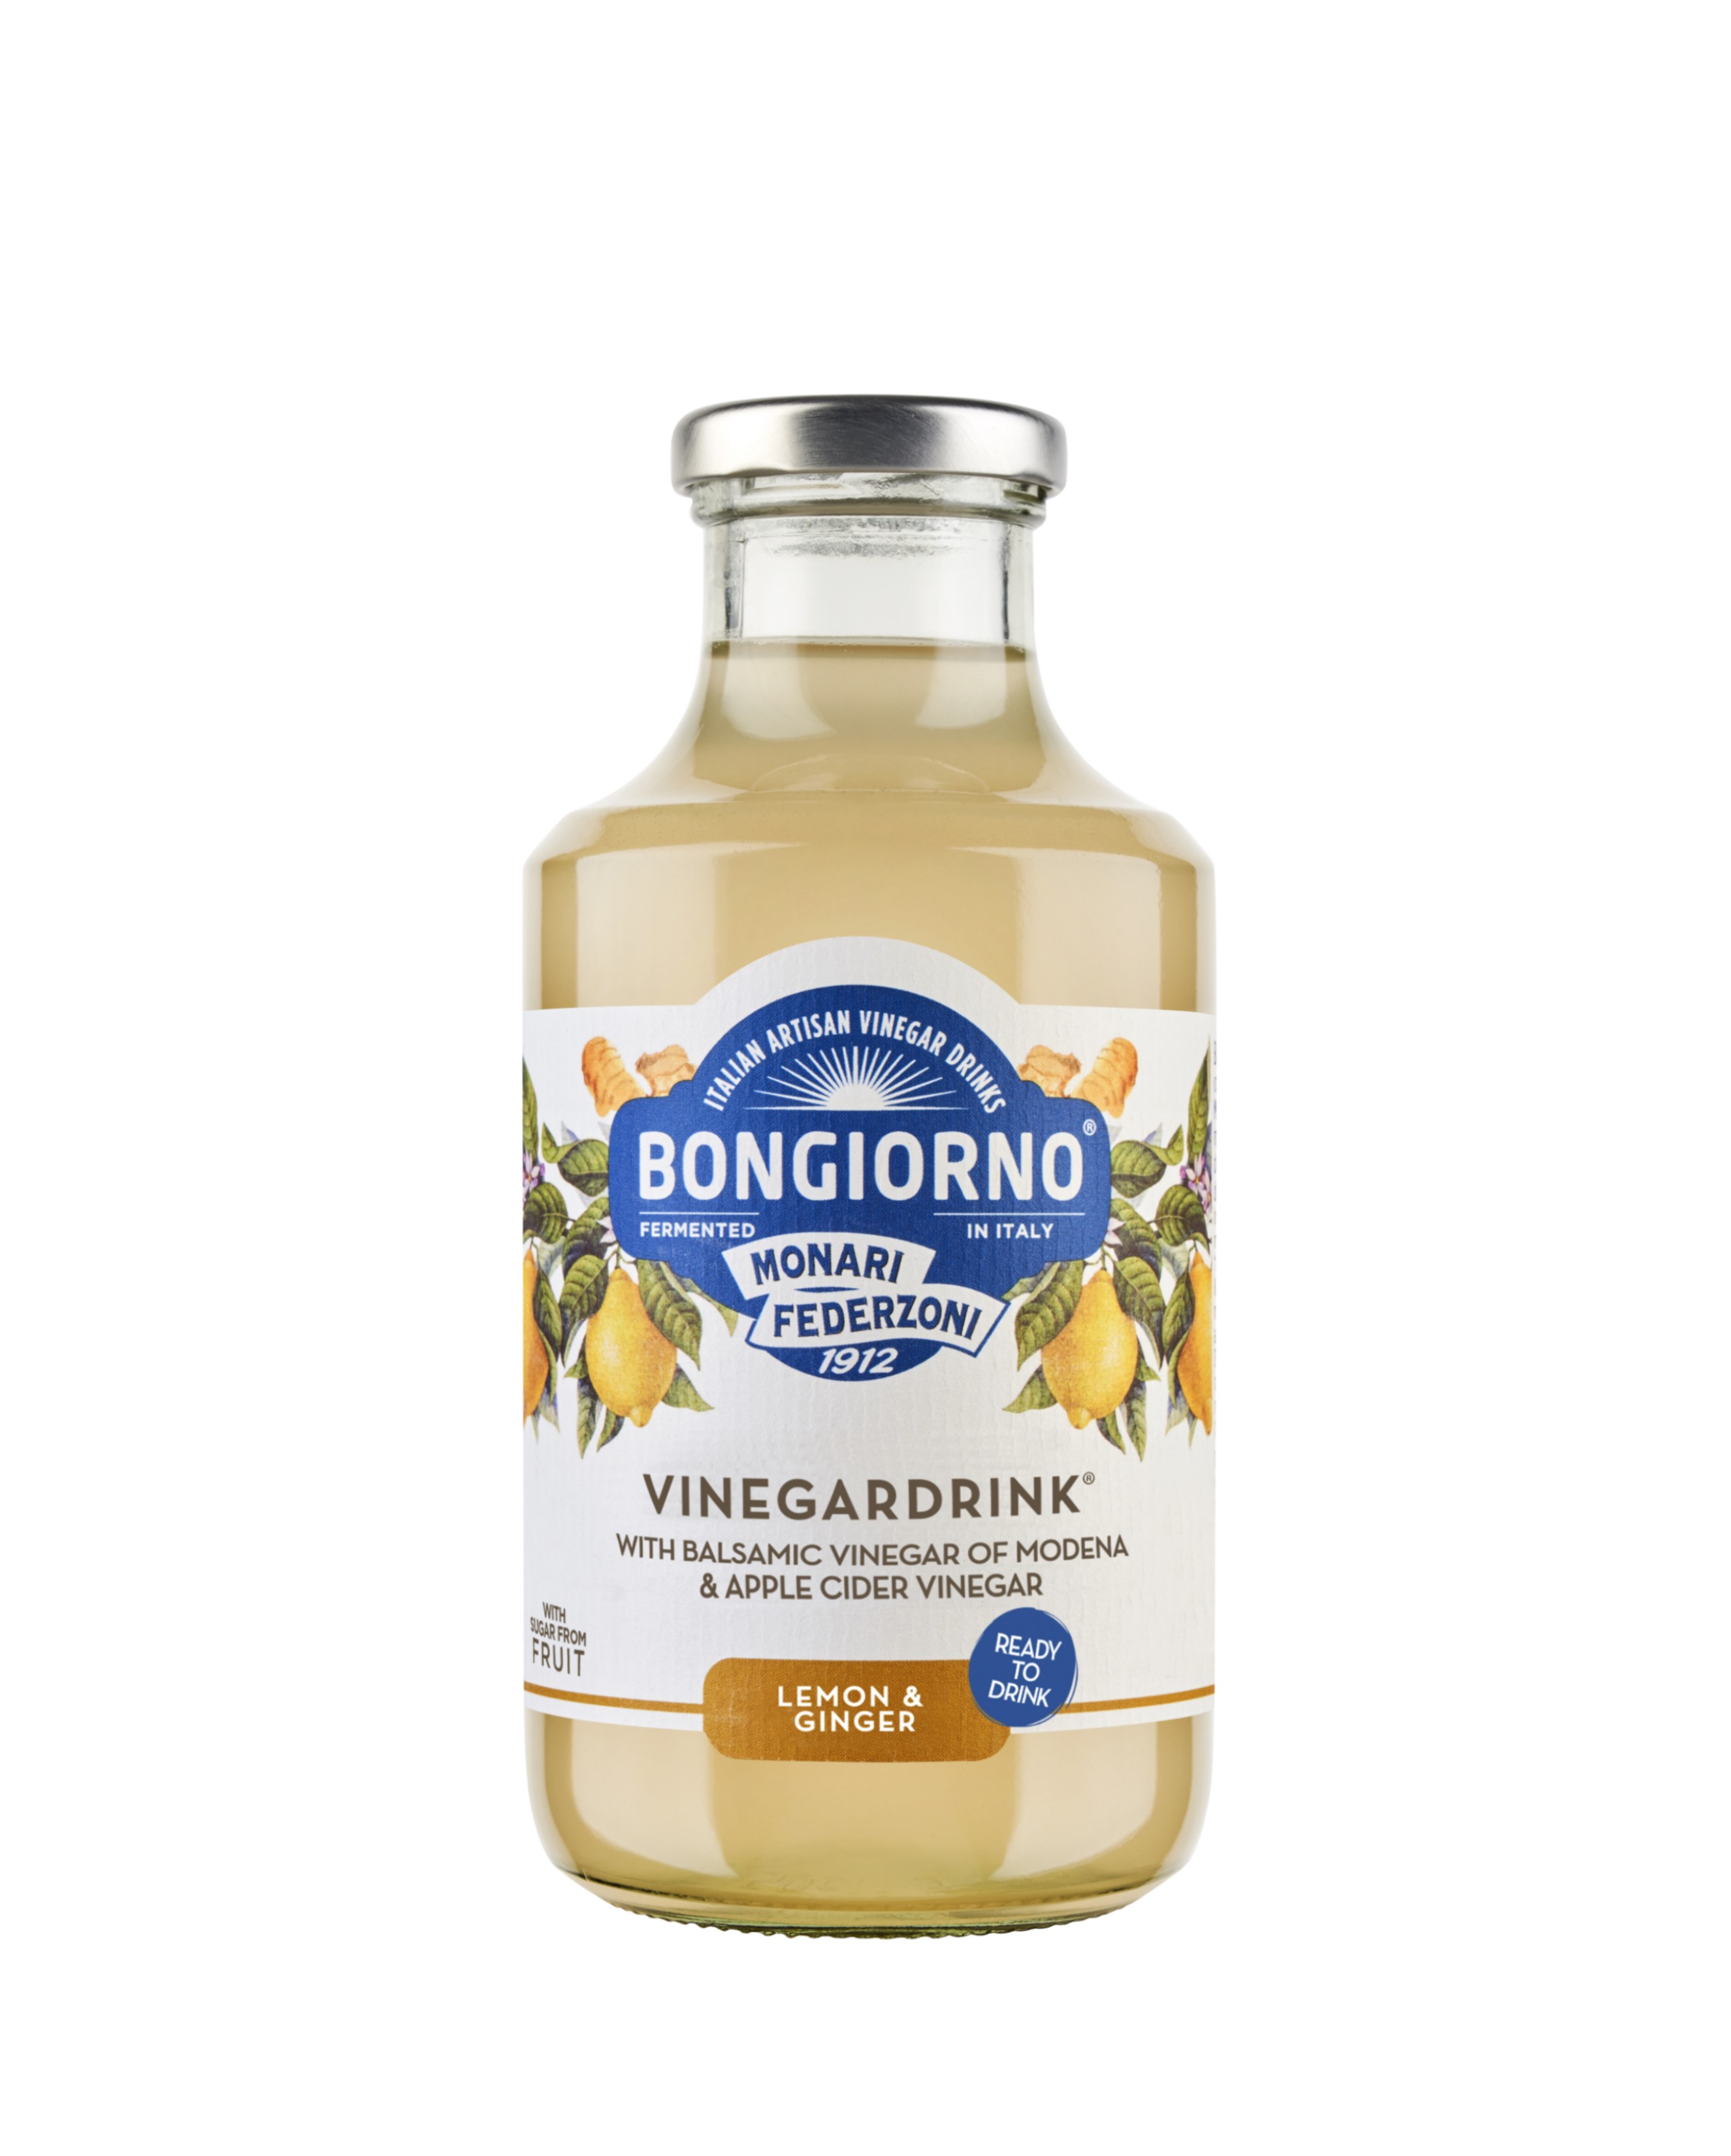 MONARI Vinegardrink Lemon & Ginger